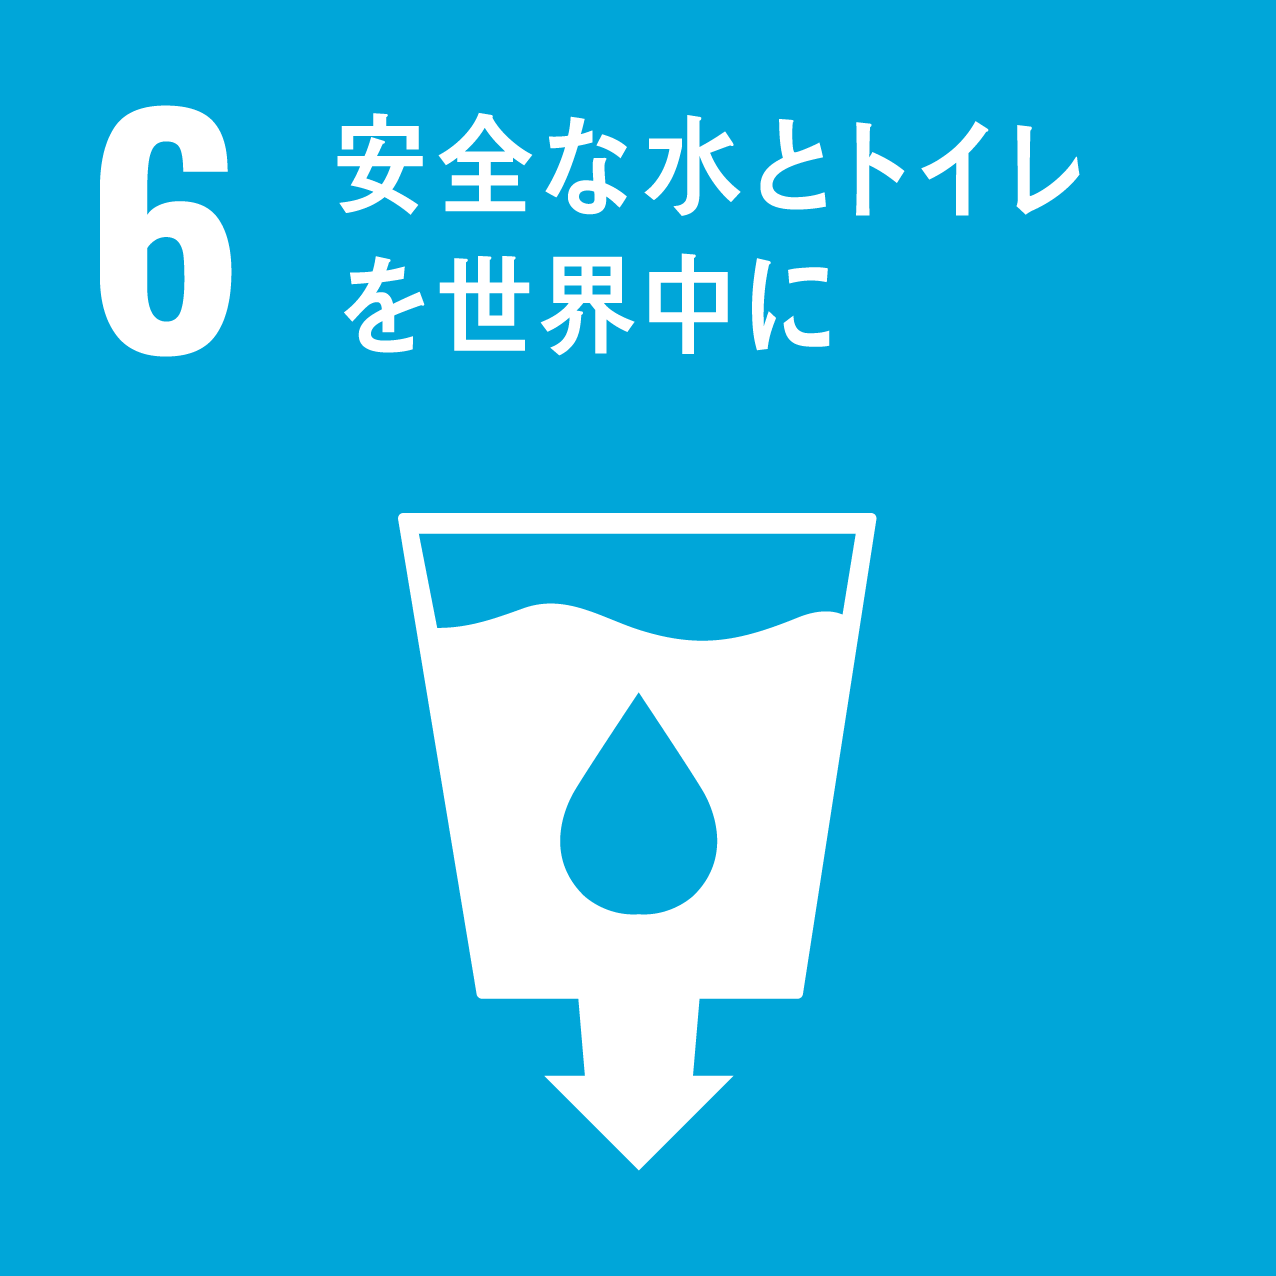 6: 安全な水とトイレを世界中に